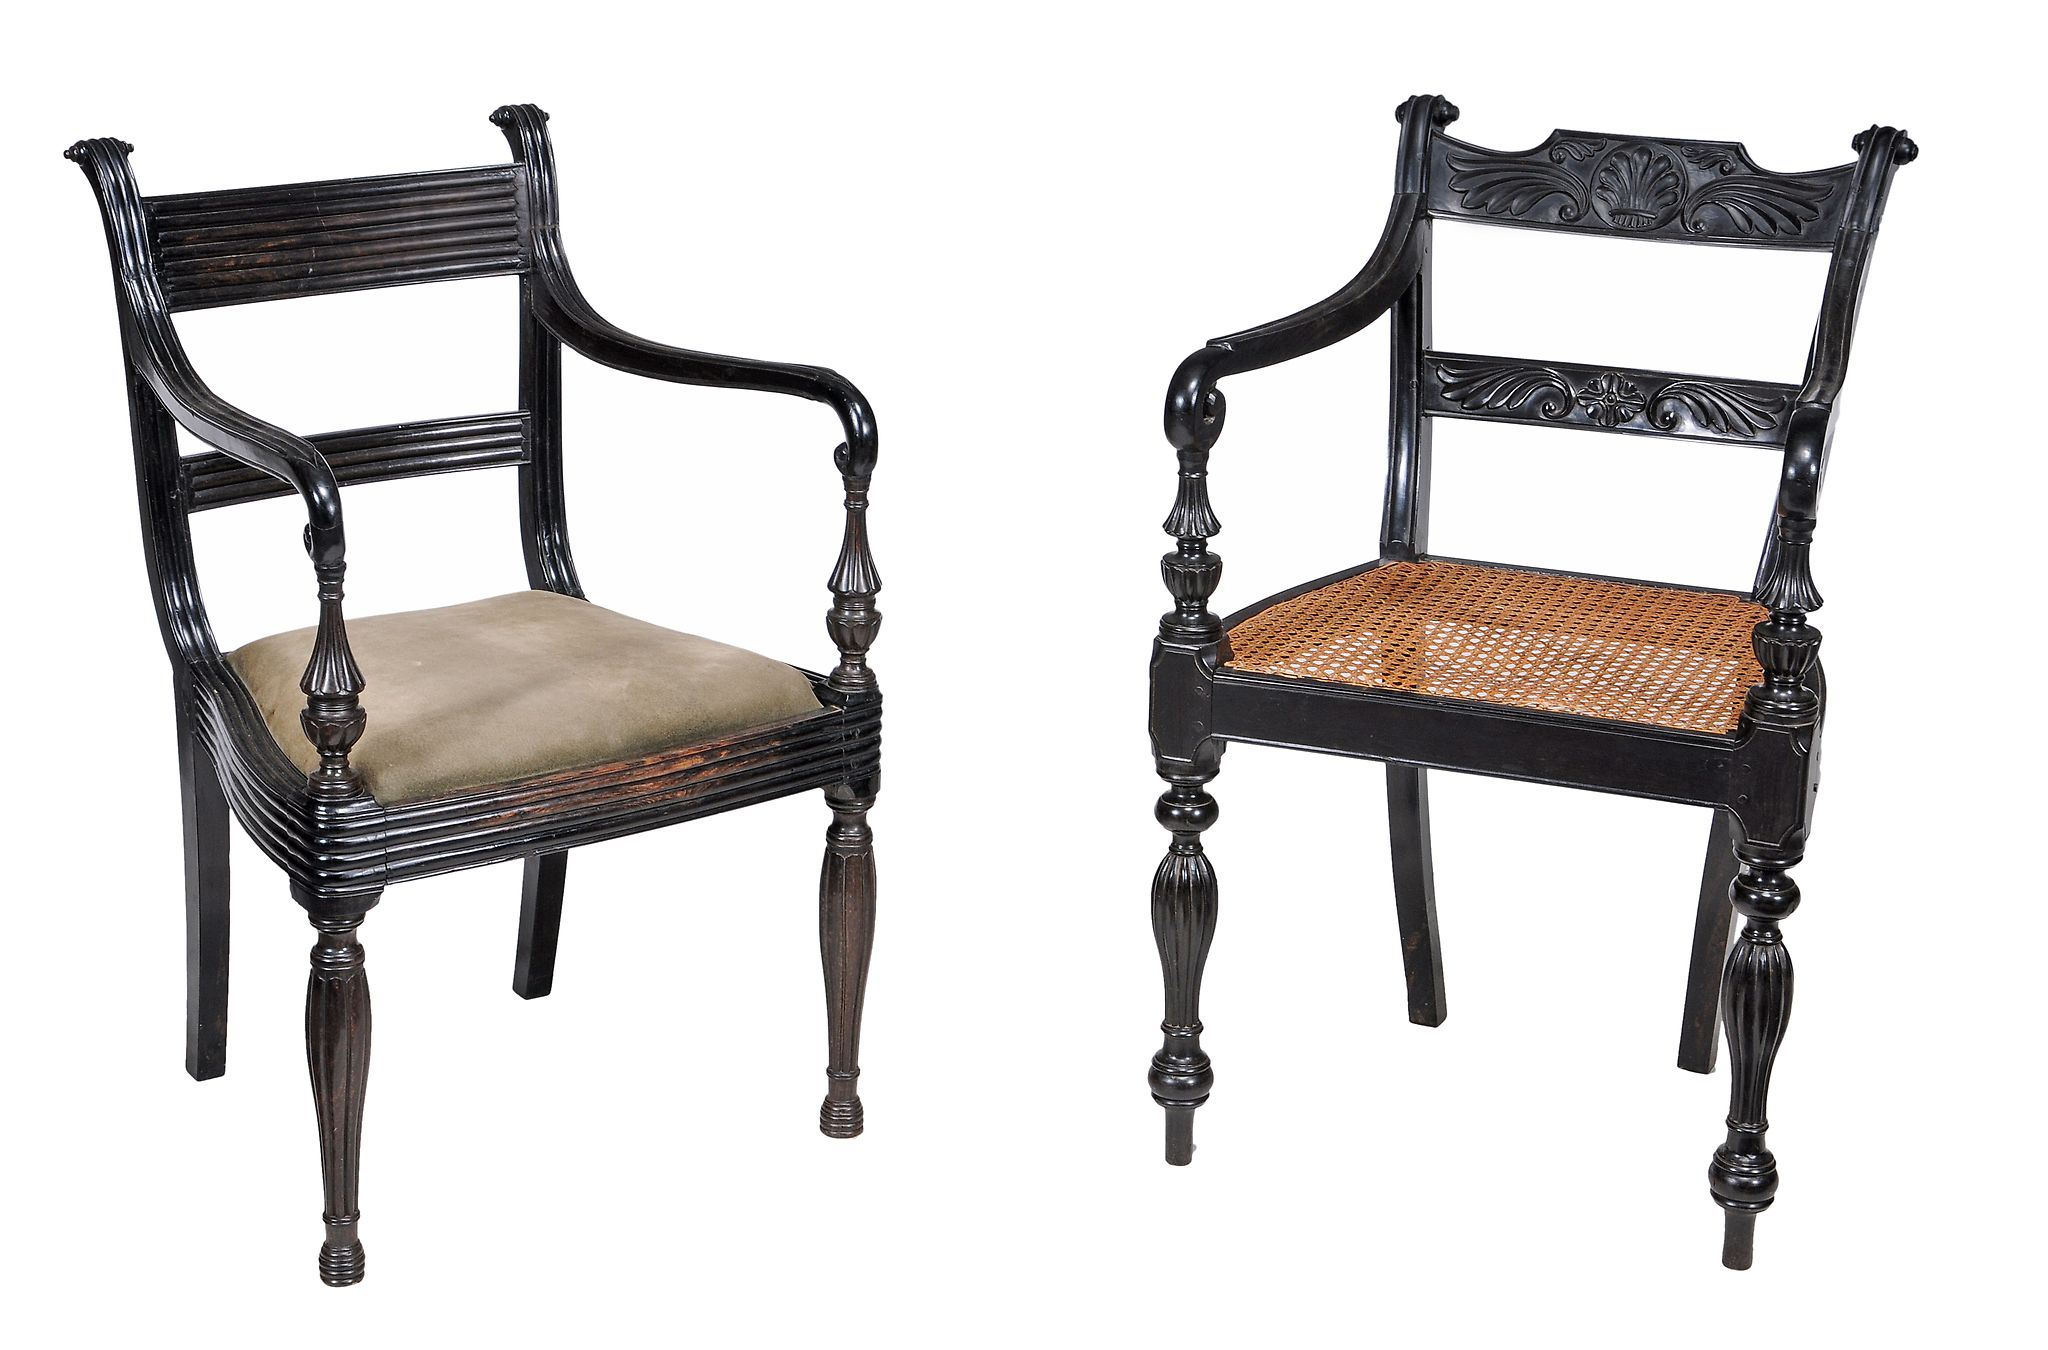 A Ceylonese ebony open armchair, circa 1840  A Ceylonese ebony open armchair,   circa 1840  ,   with - Image 4 of 5